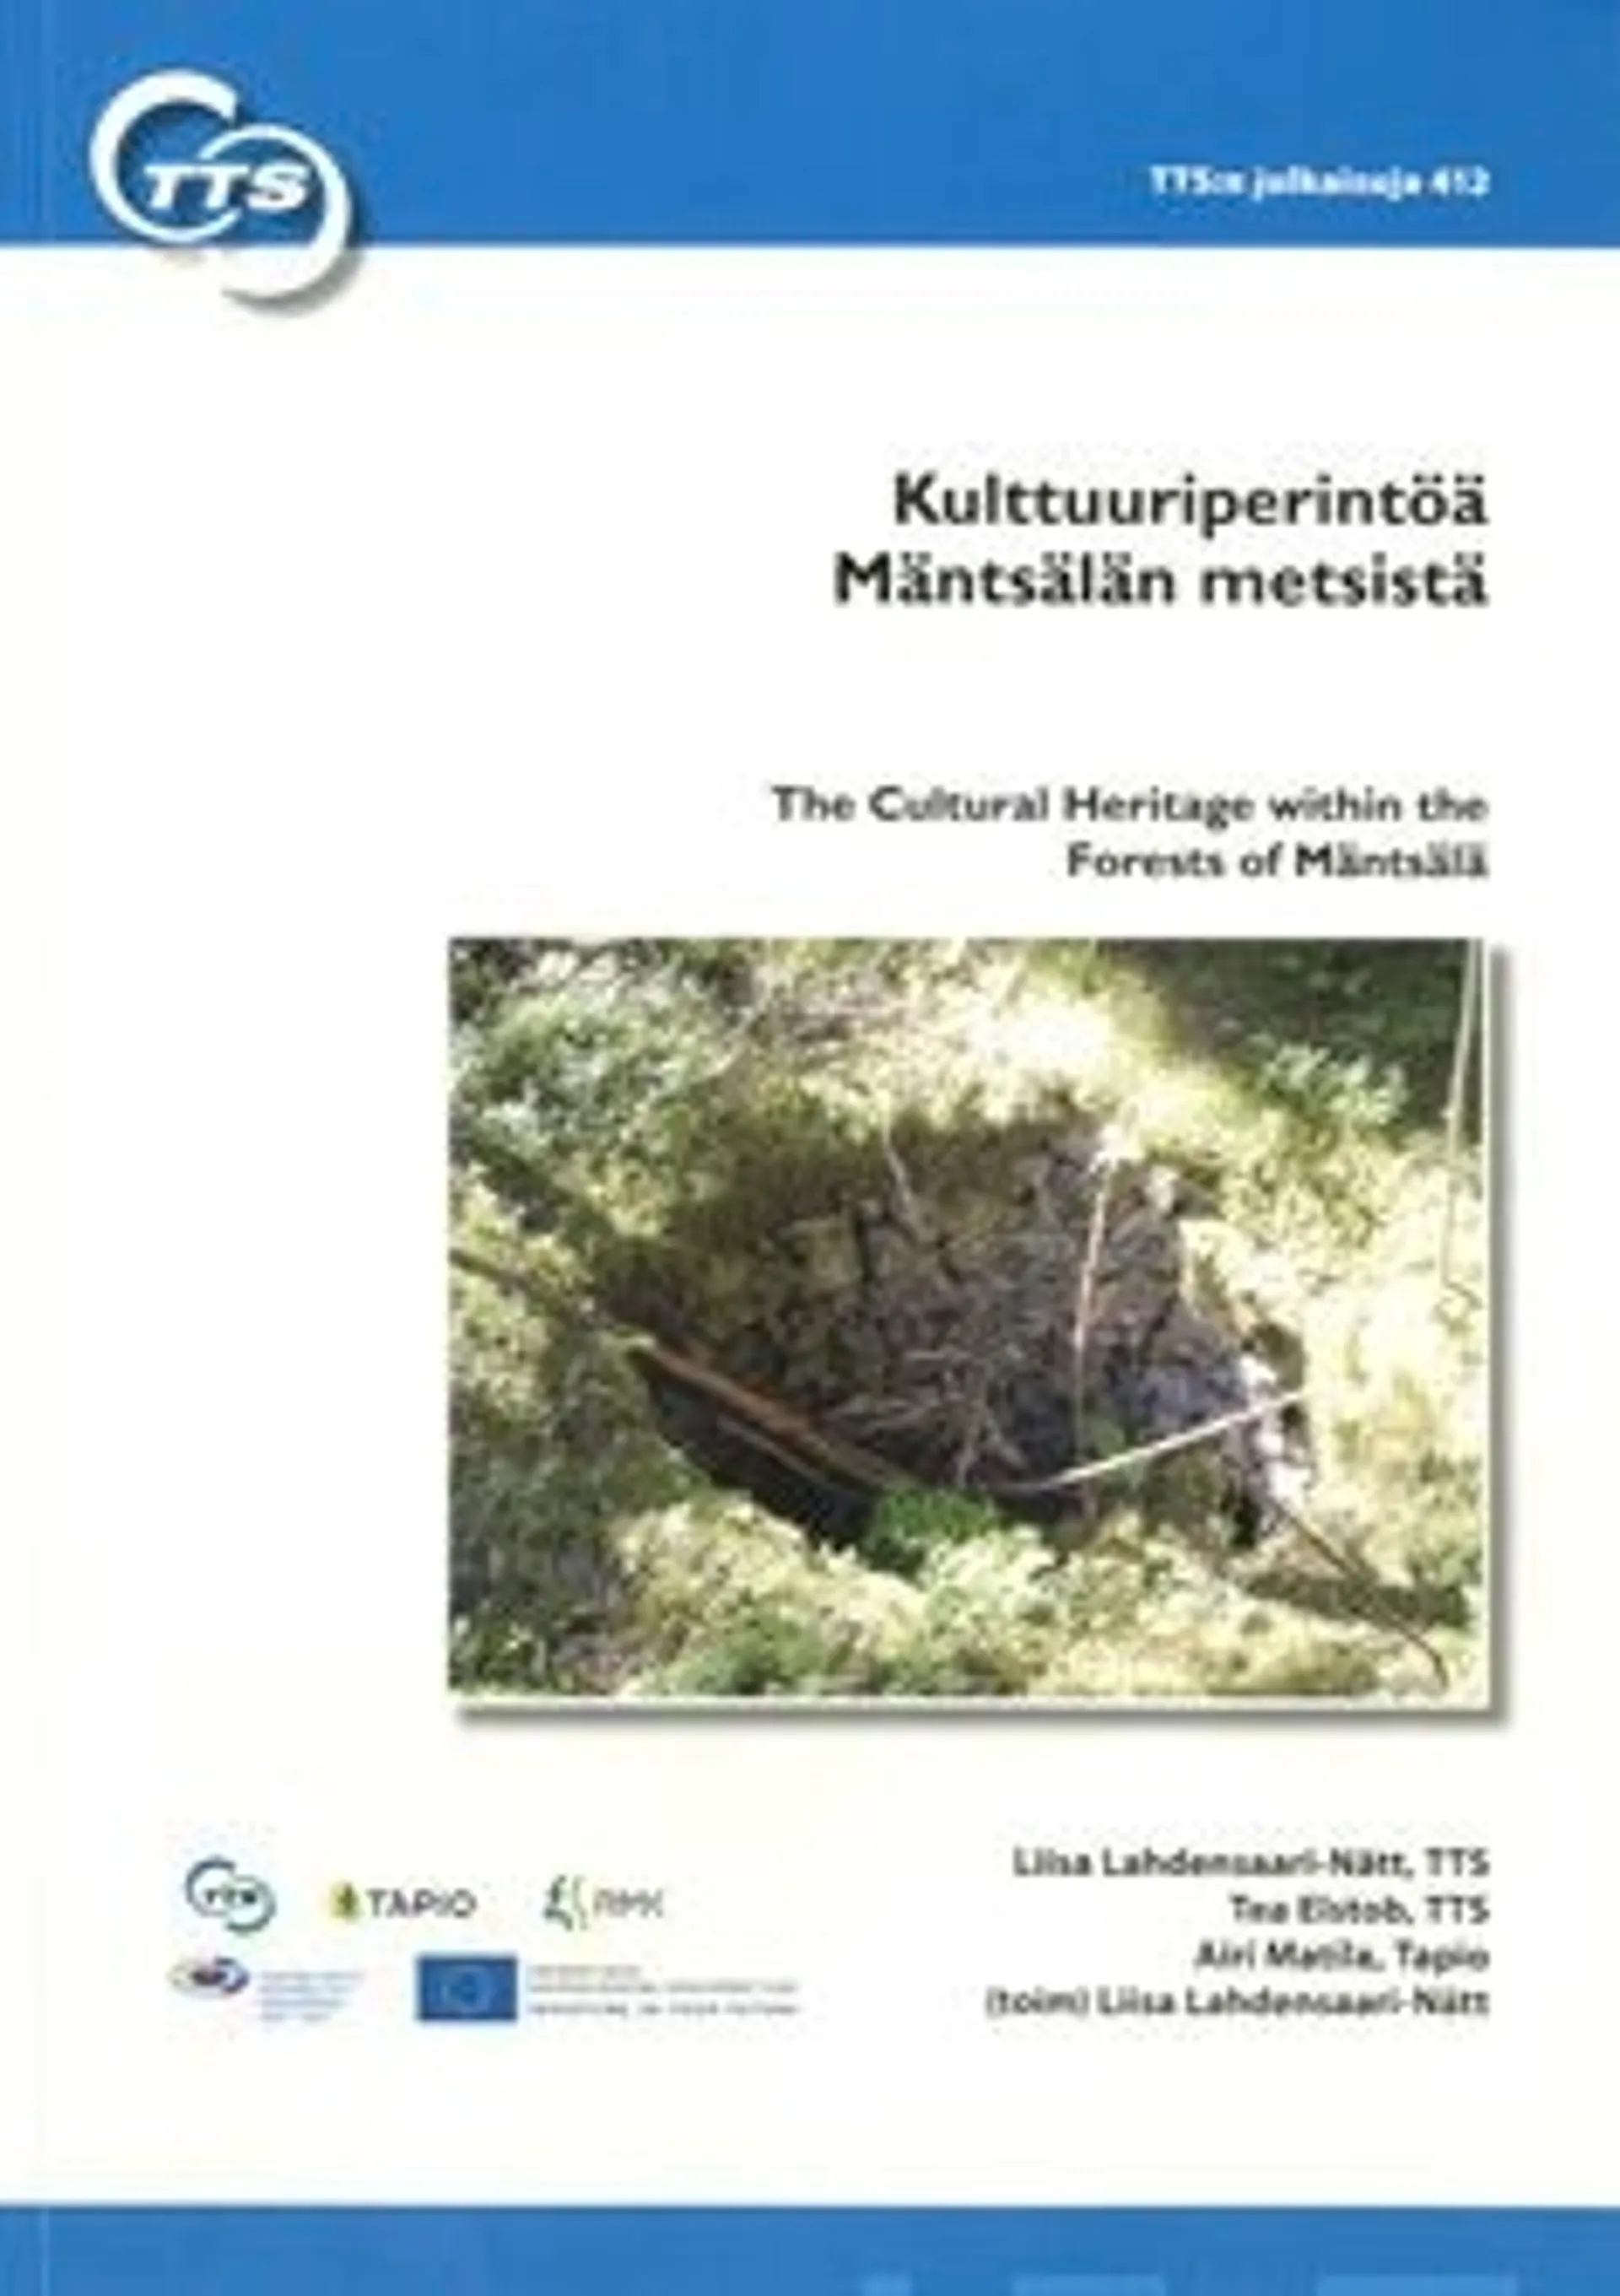 Lahdensaari-Nätt, Kulttuuriperintöä Mäntsälän metsistä